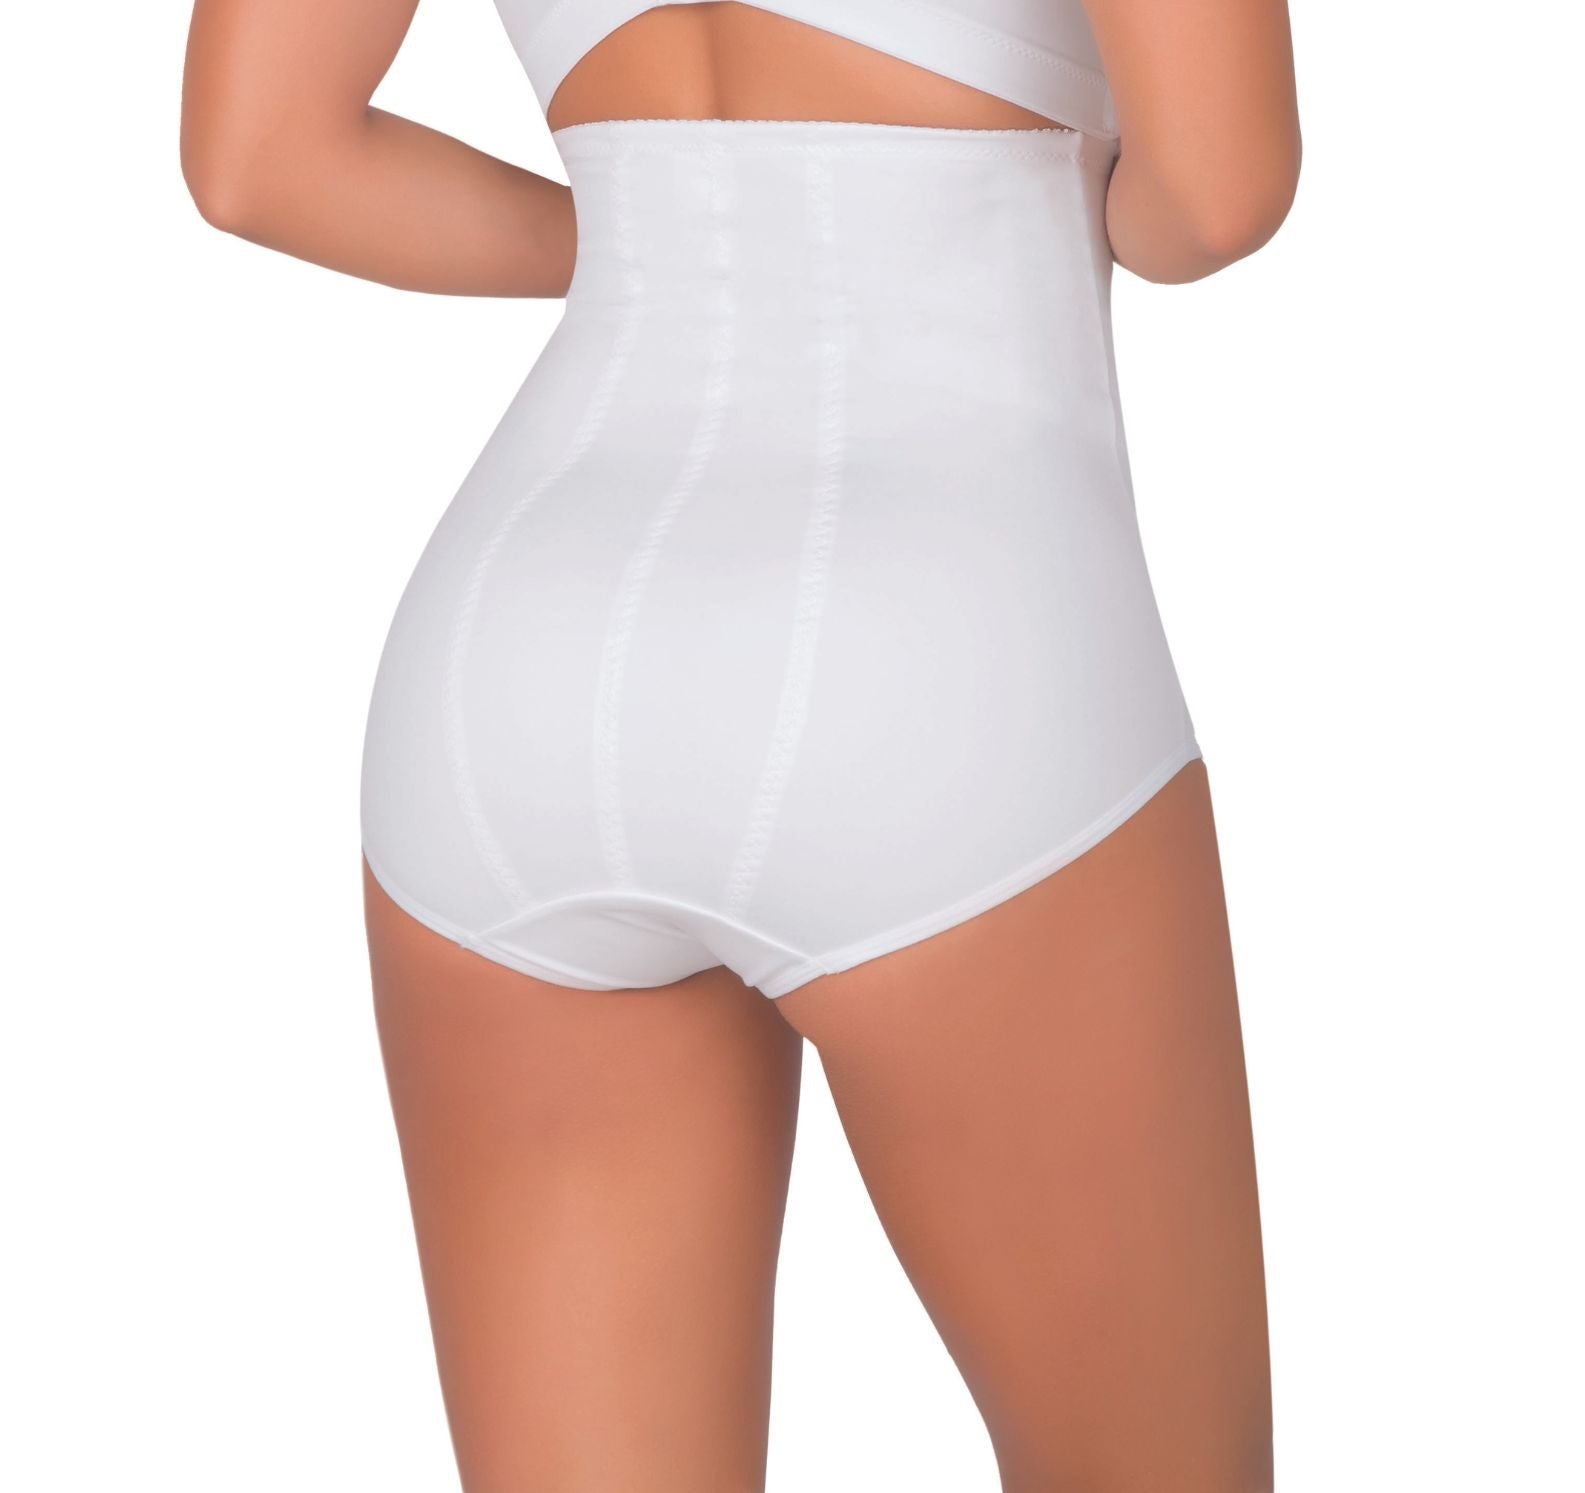 Nearly Nude Panties con Faja 3 Unidades, Moda y accesorios mujer, Pricesmart, Santa Ana